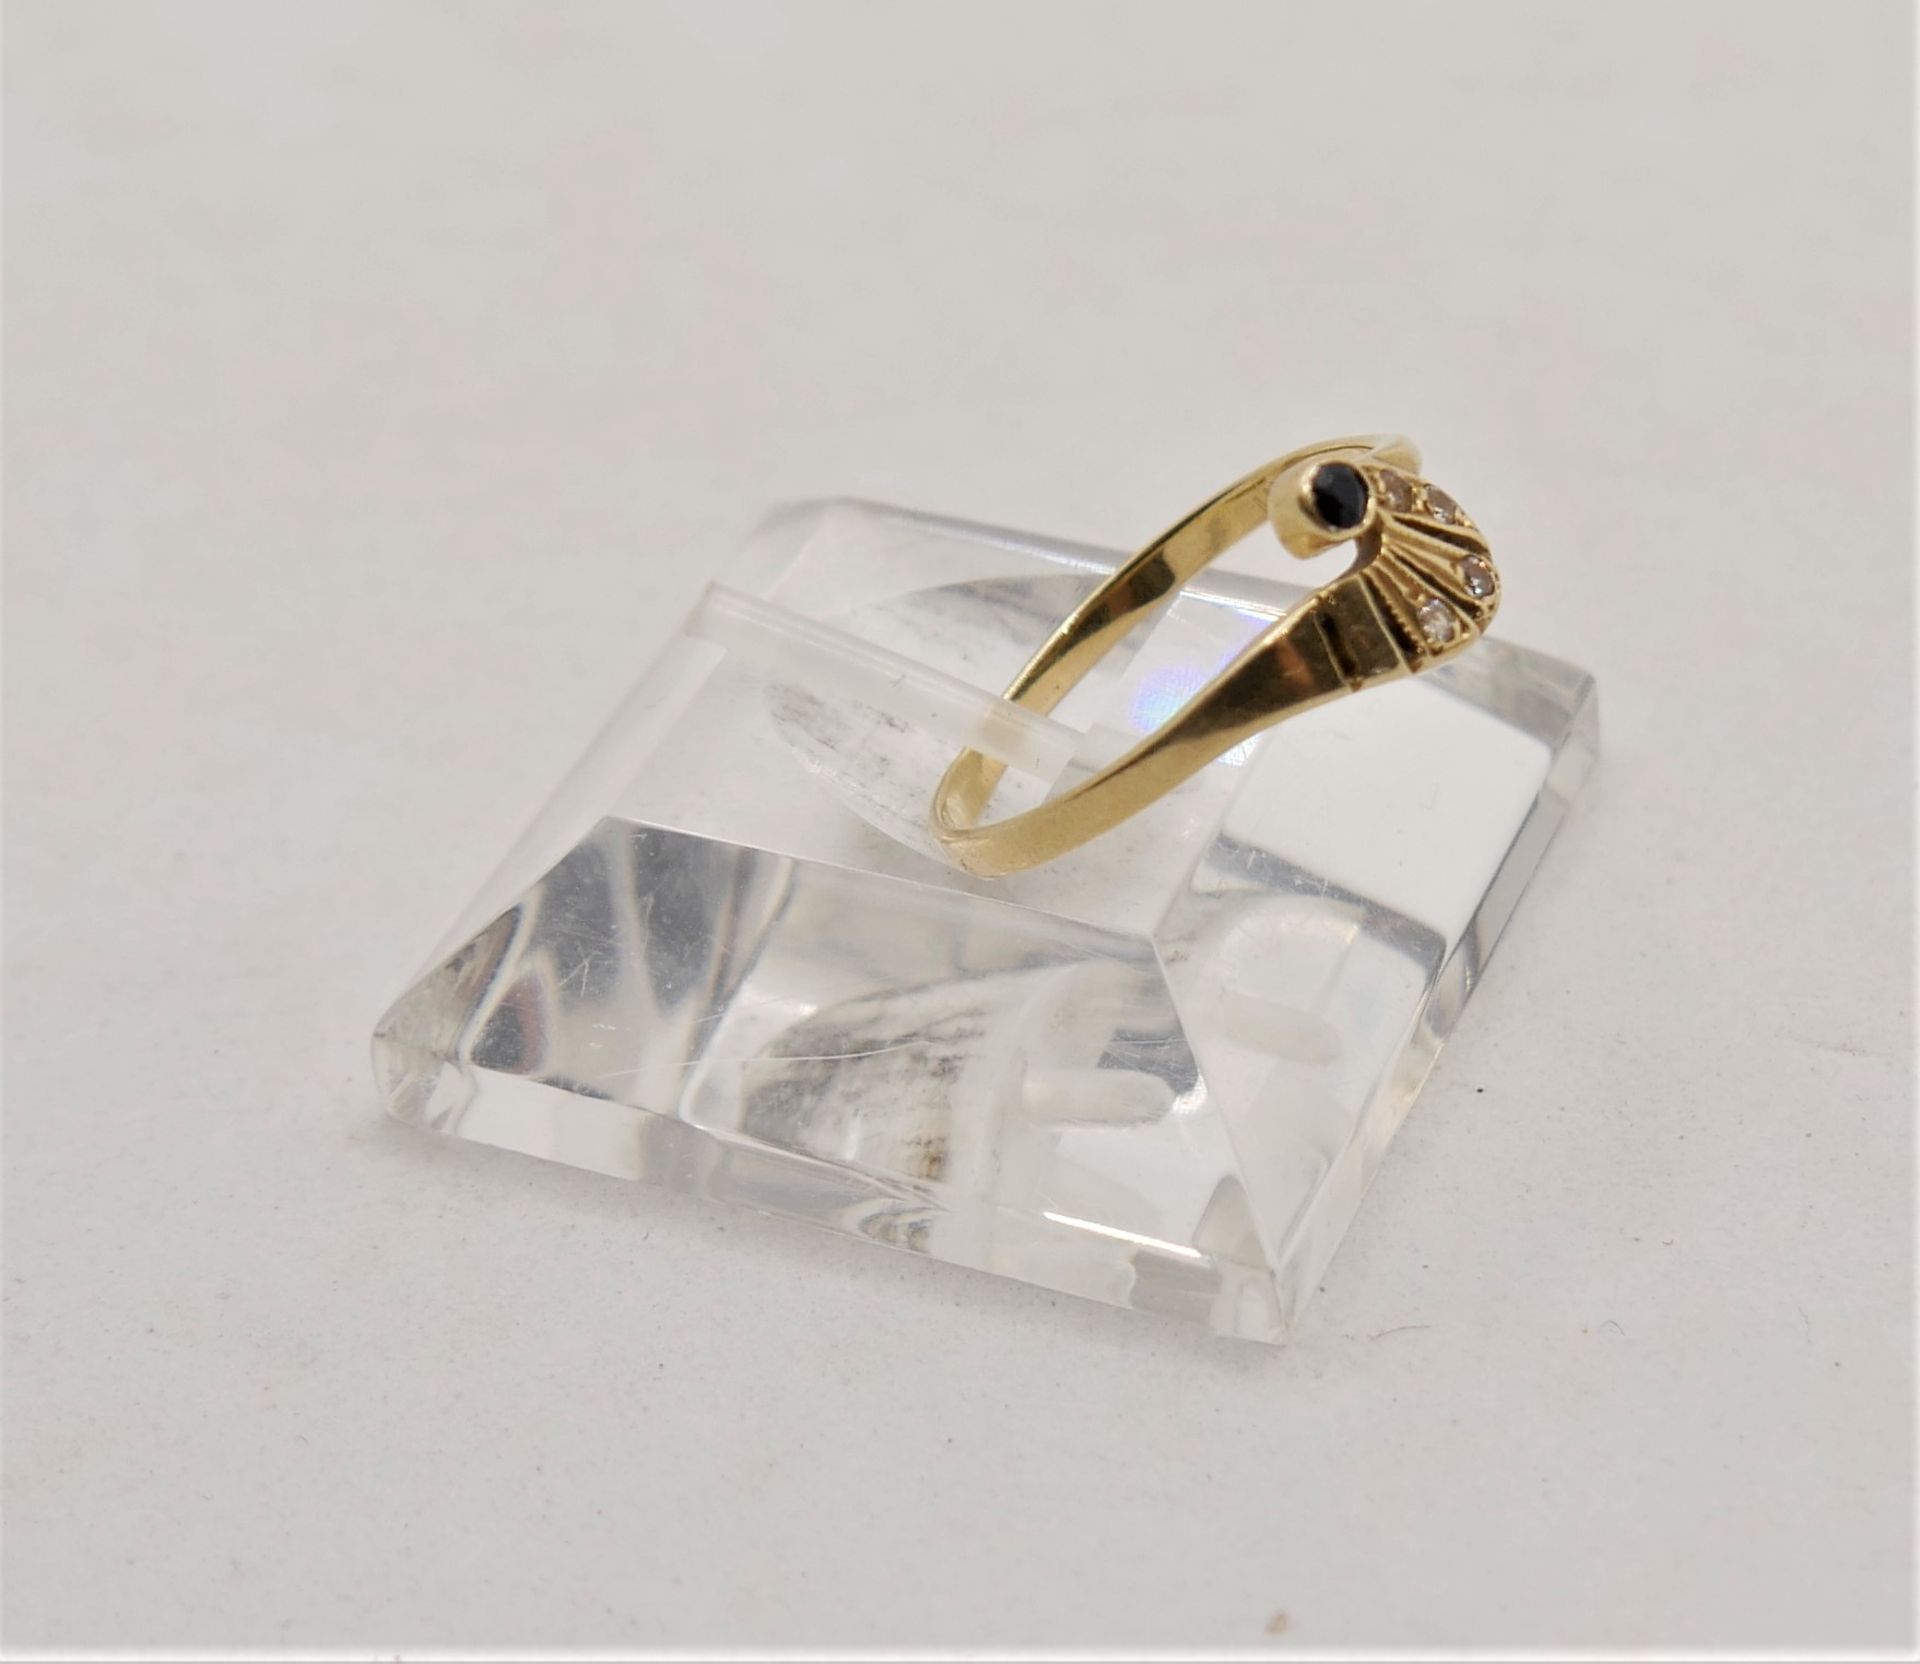 Damenring, 14 ct Gelbgold, mit kleinem Saphir sowie Diamantsplitter. Ringgröße 58 - Bild 2 aus 2